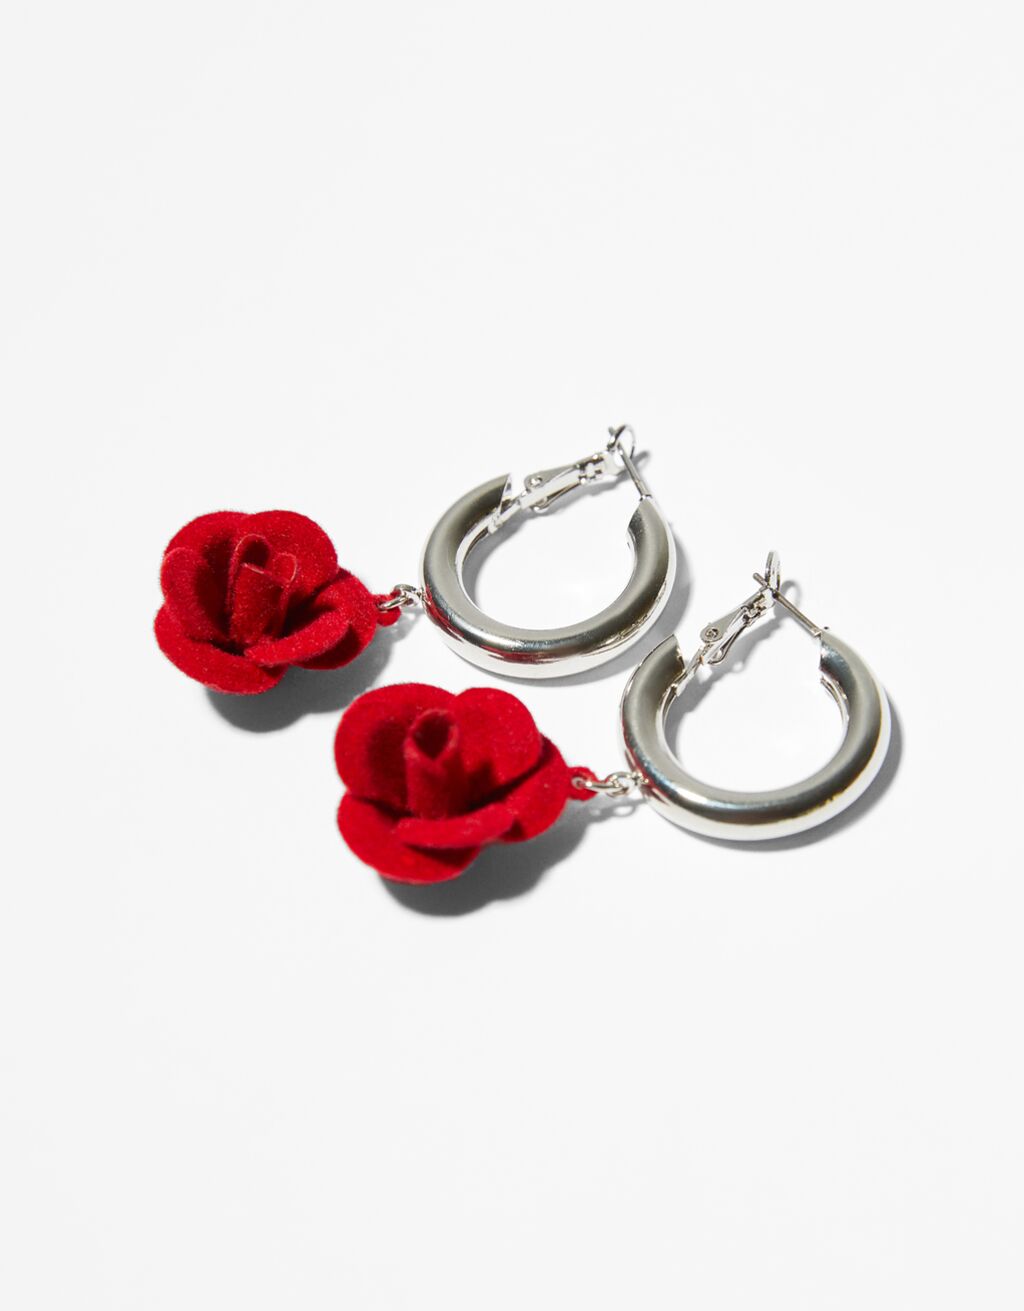 Hoop earrings with flower charm